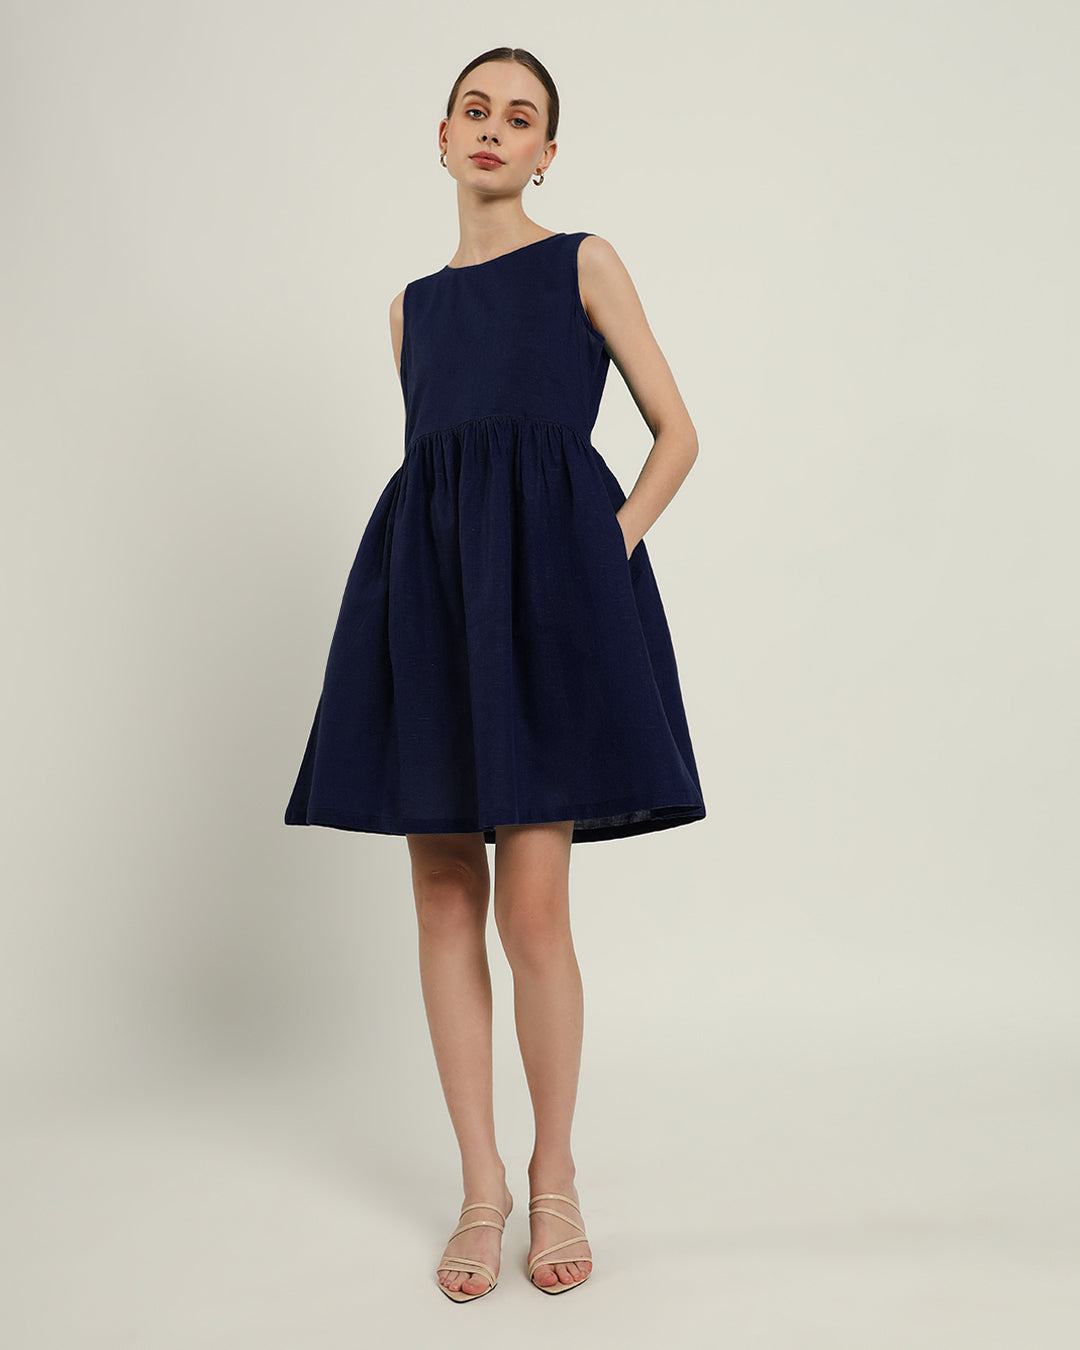 The Chania Daisy Midnight Blue Linen Dress